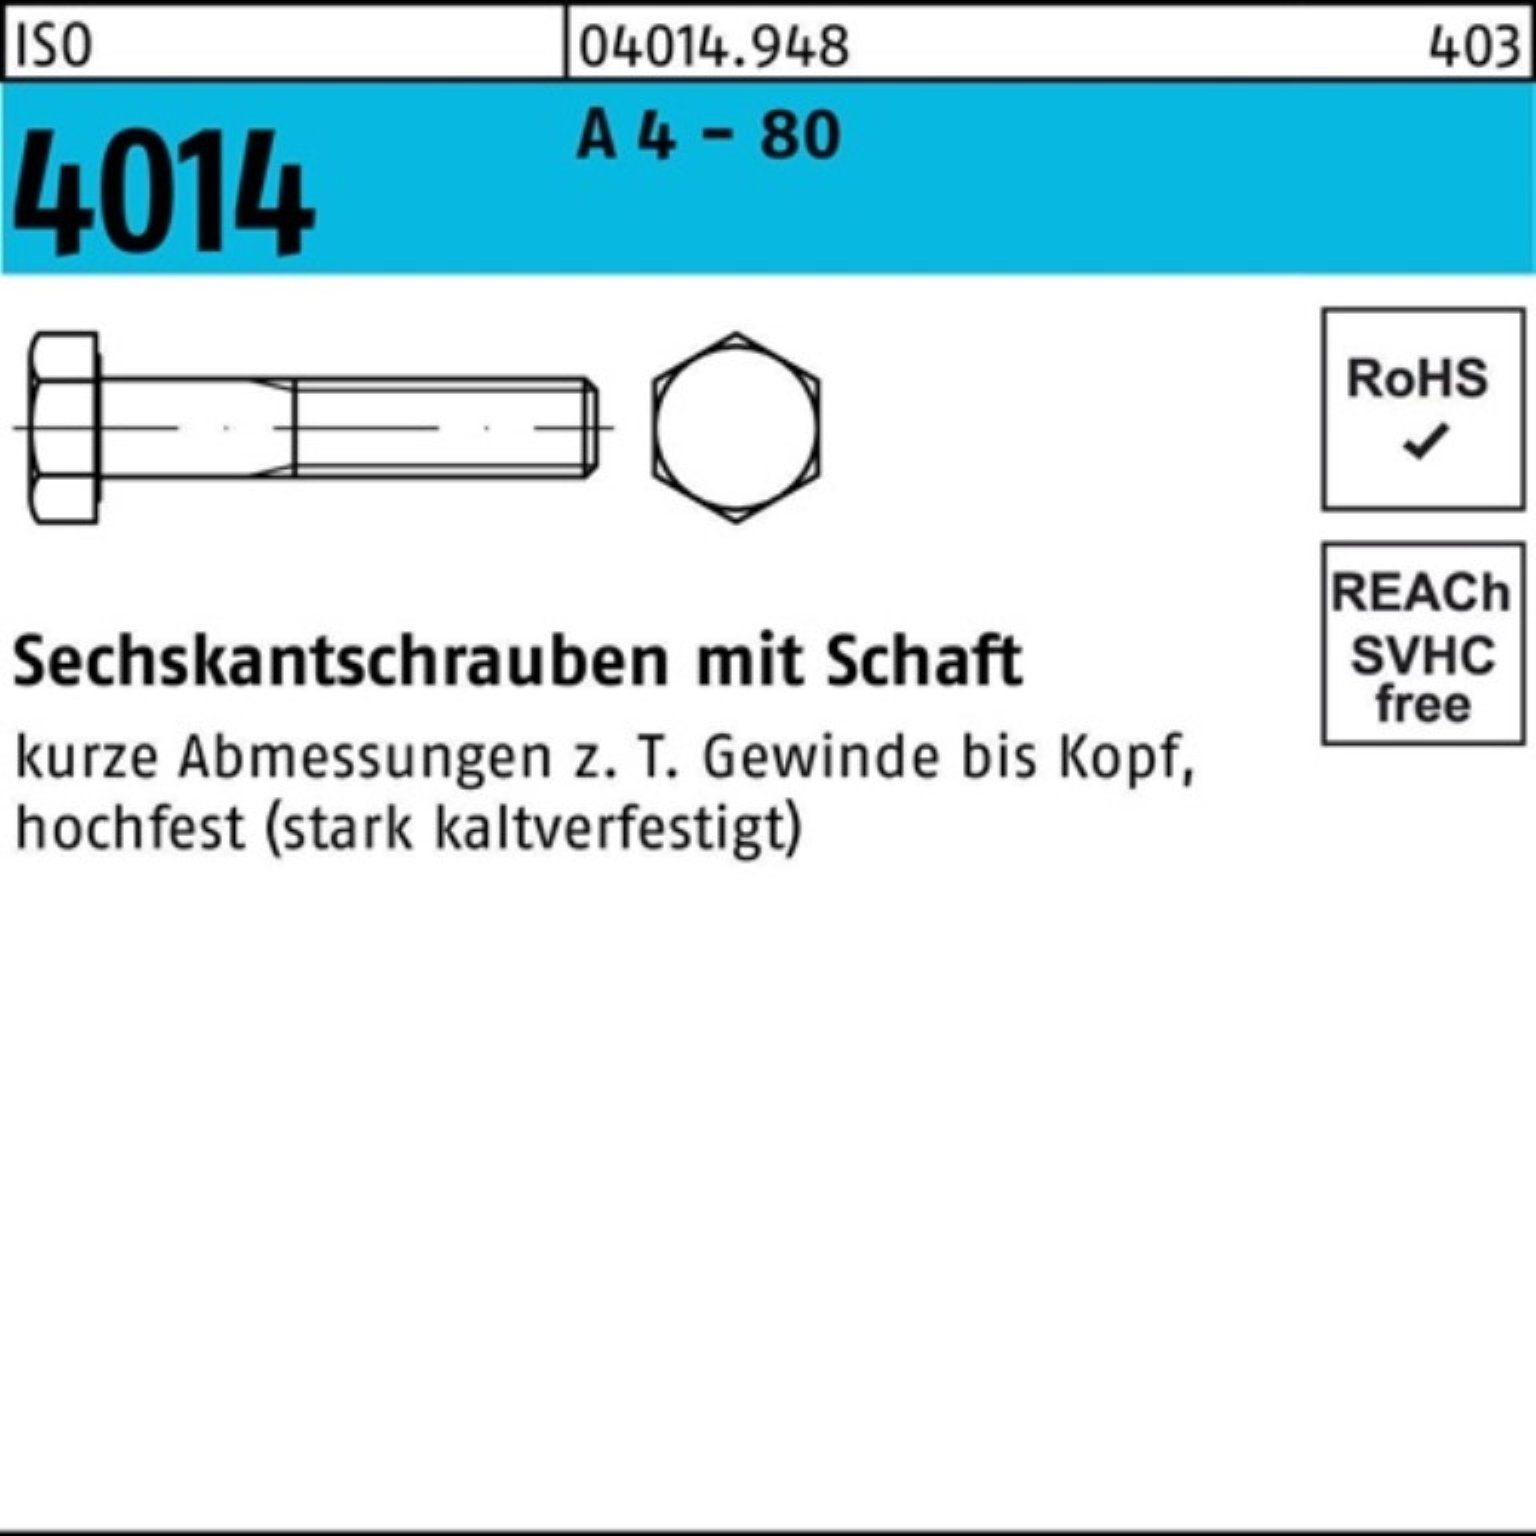 Bufab Sechskantschraube 100er Pack Sechskantschraube ISO 4014 Schaft M8x 50 A 4 - 80 100 Stüc